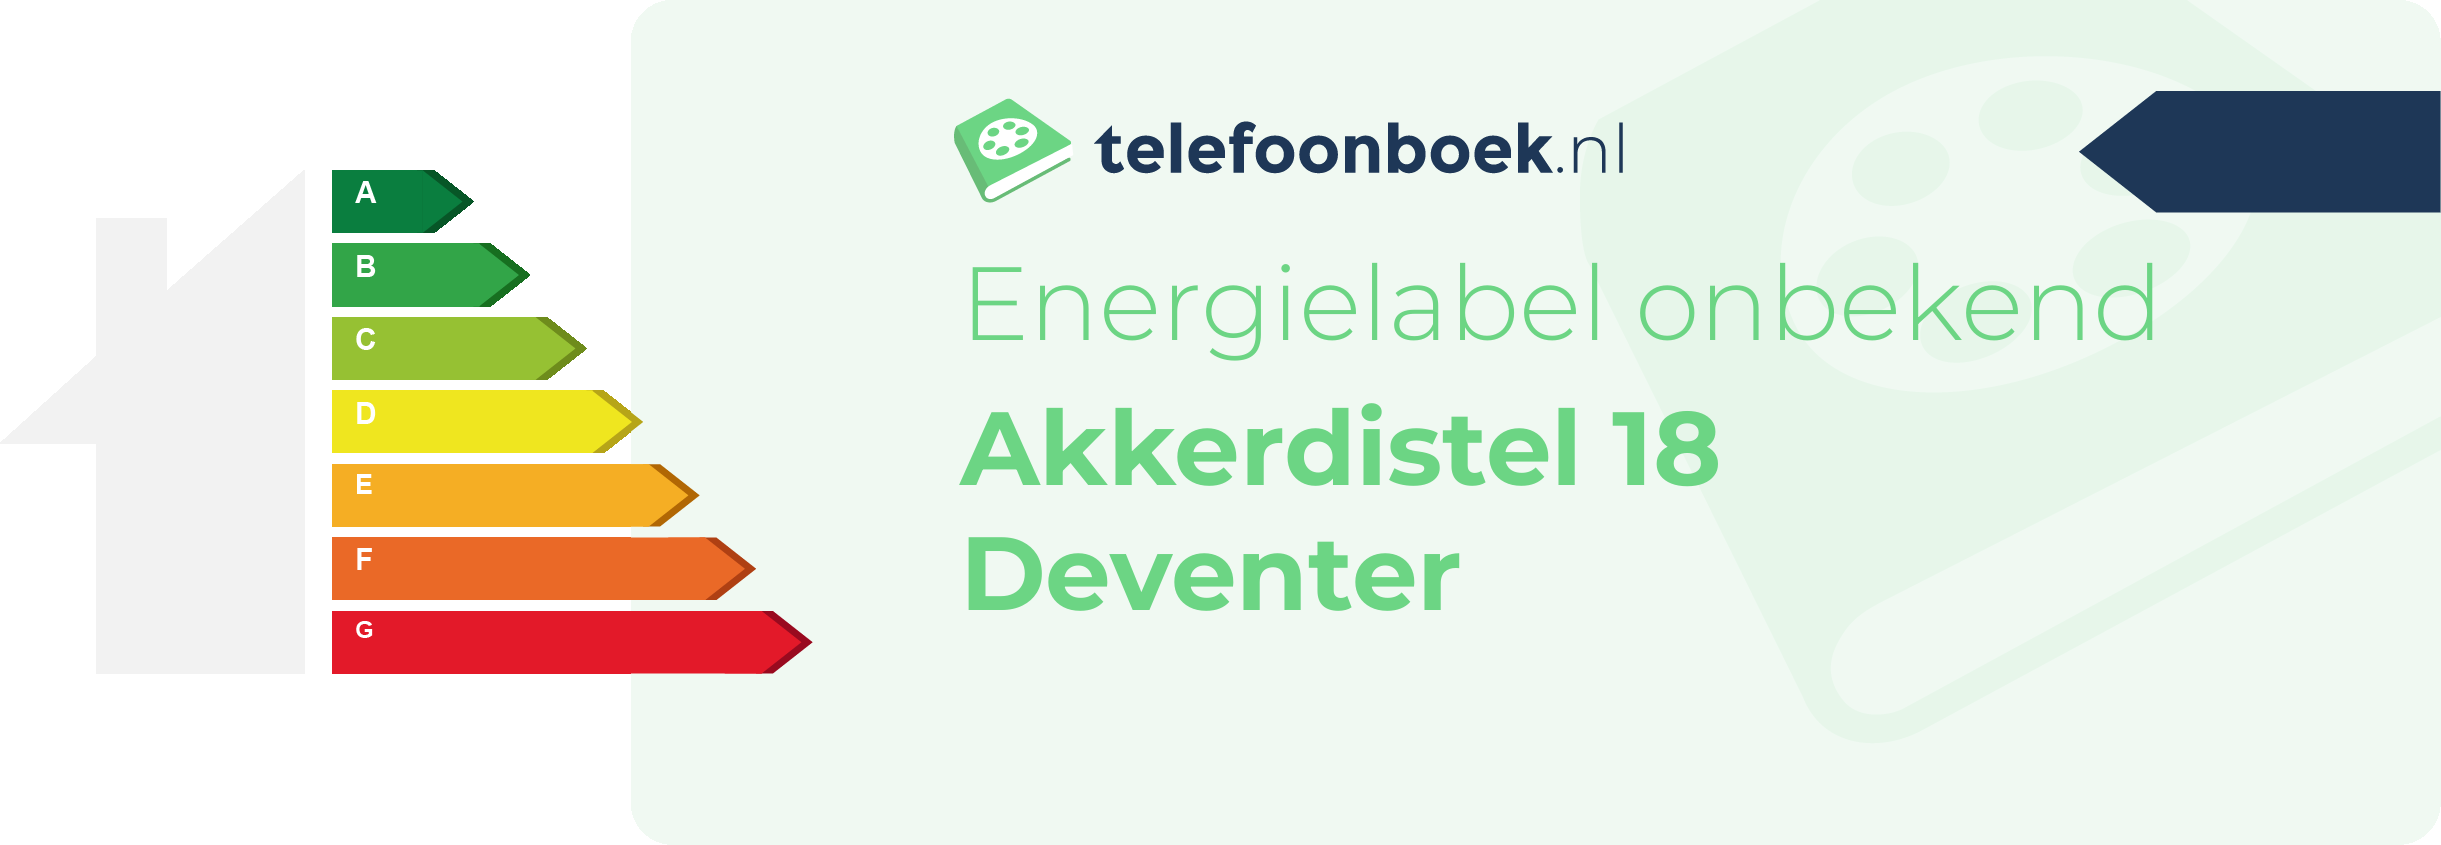 Energielabel Akkerdistel 18 Deventer